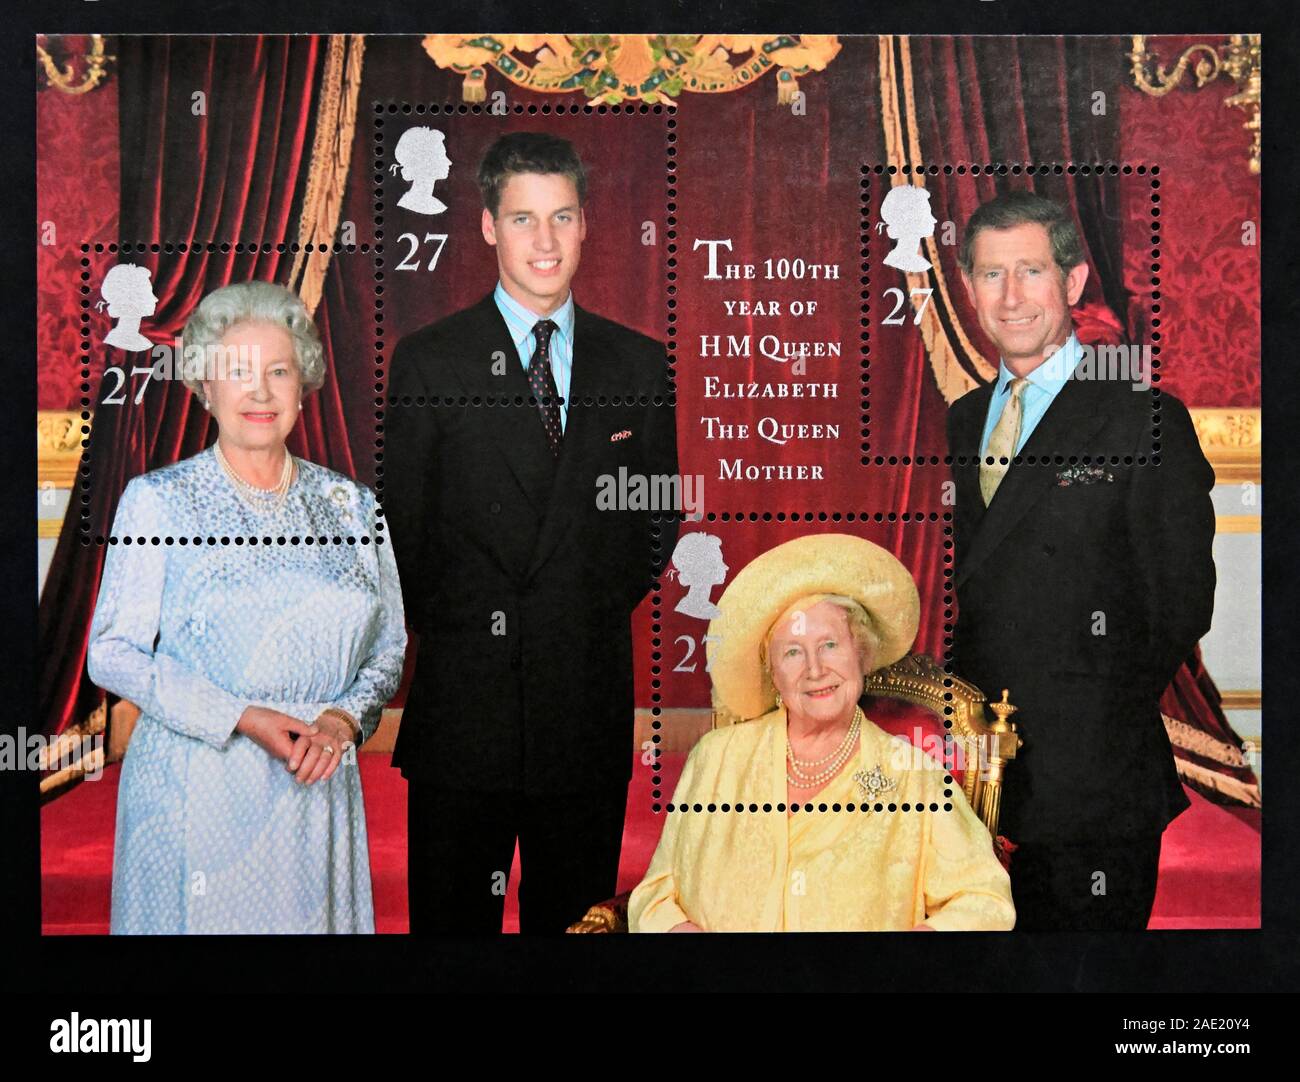 Timbre-poste. La Grande-Bretagne. La reine Elizabeth II. La 100ème année de Sa Majesté la reine Elizabeth la reine mère. Feuille miniature. Banque D'Images